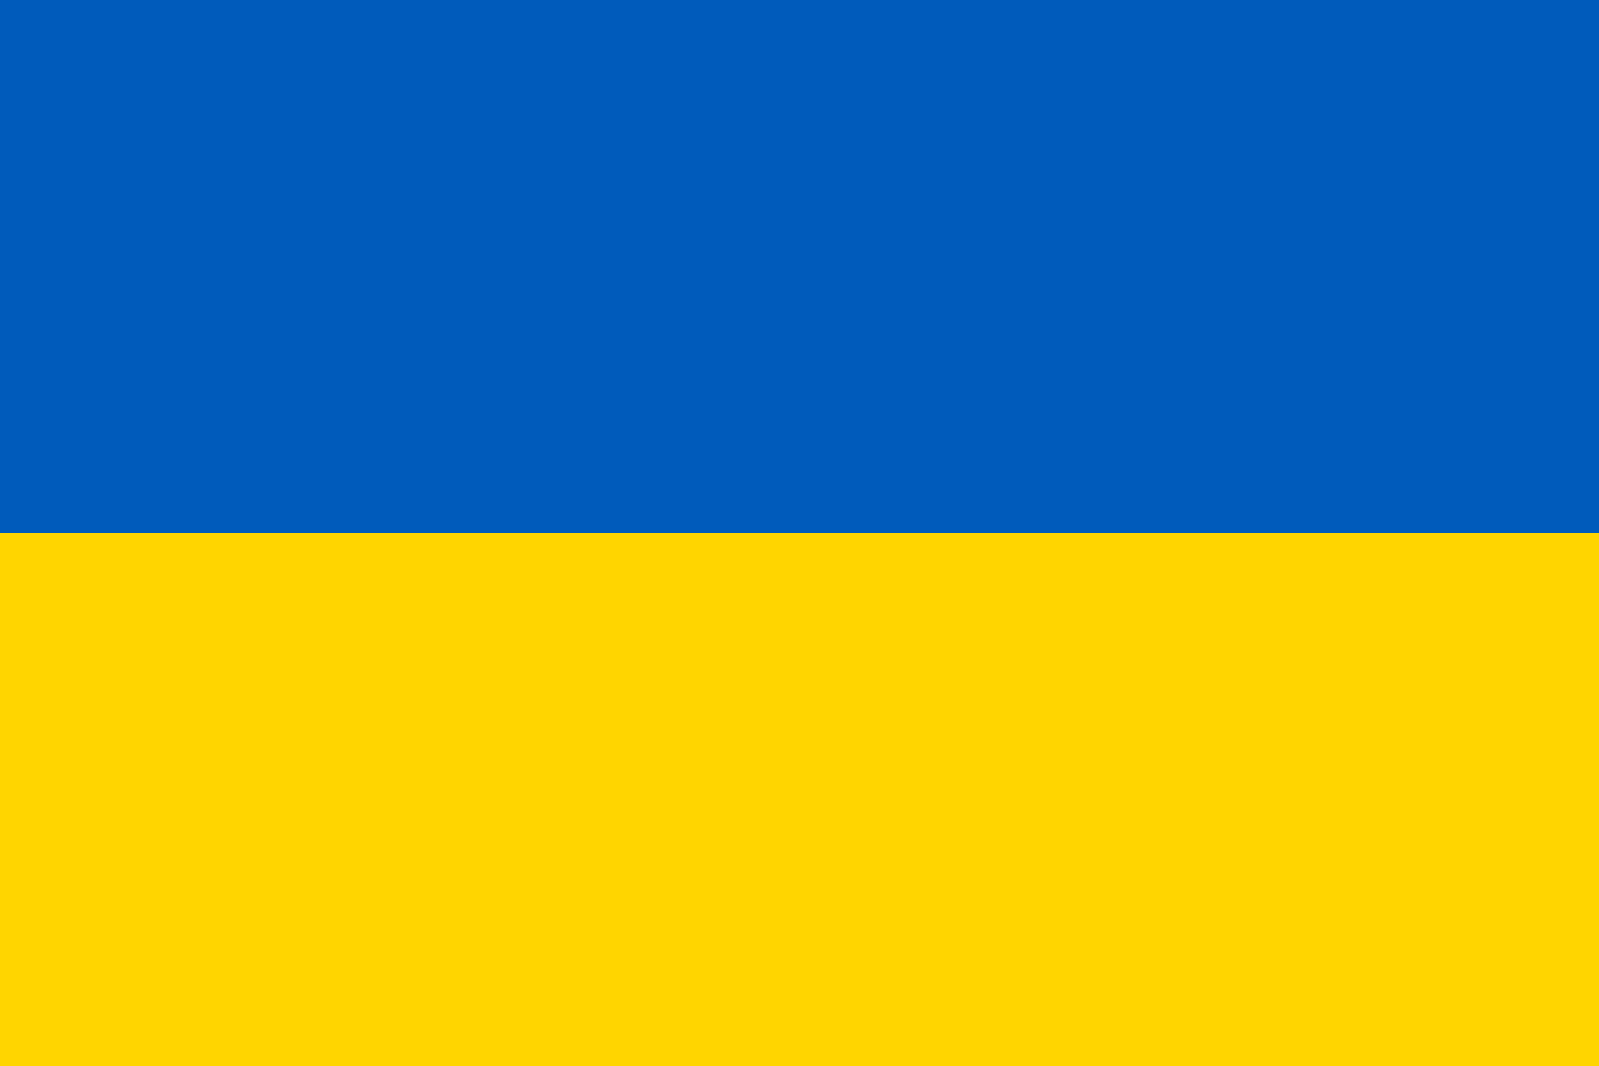 Σημαία της Ουκρανίας